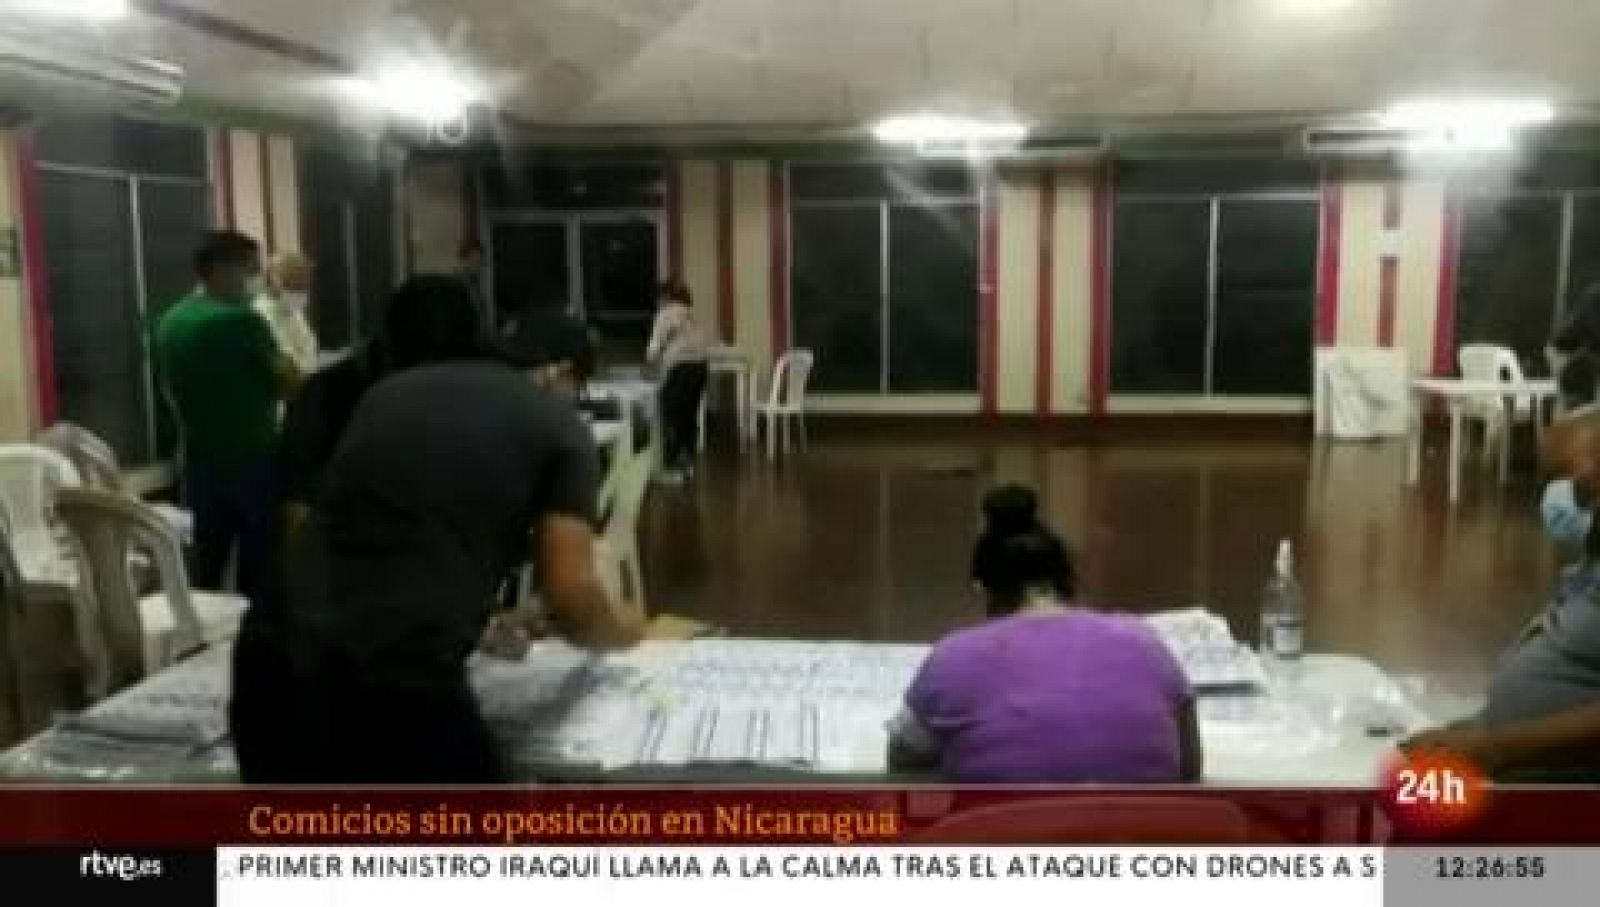 Ortega vence en las elecciones de Nicaragua con el 75 % de votos, según resultados preliminares - Ver ahora